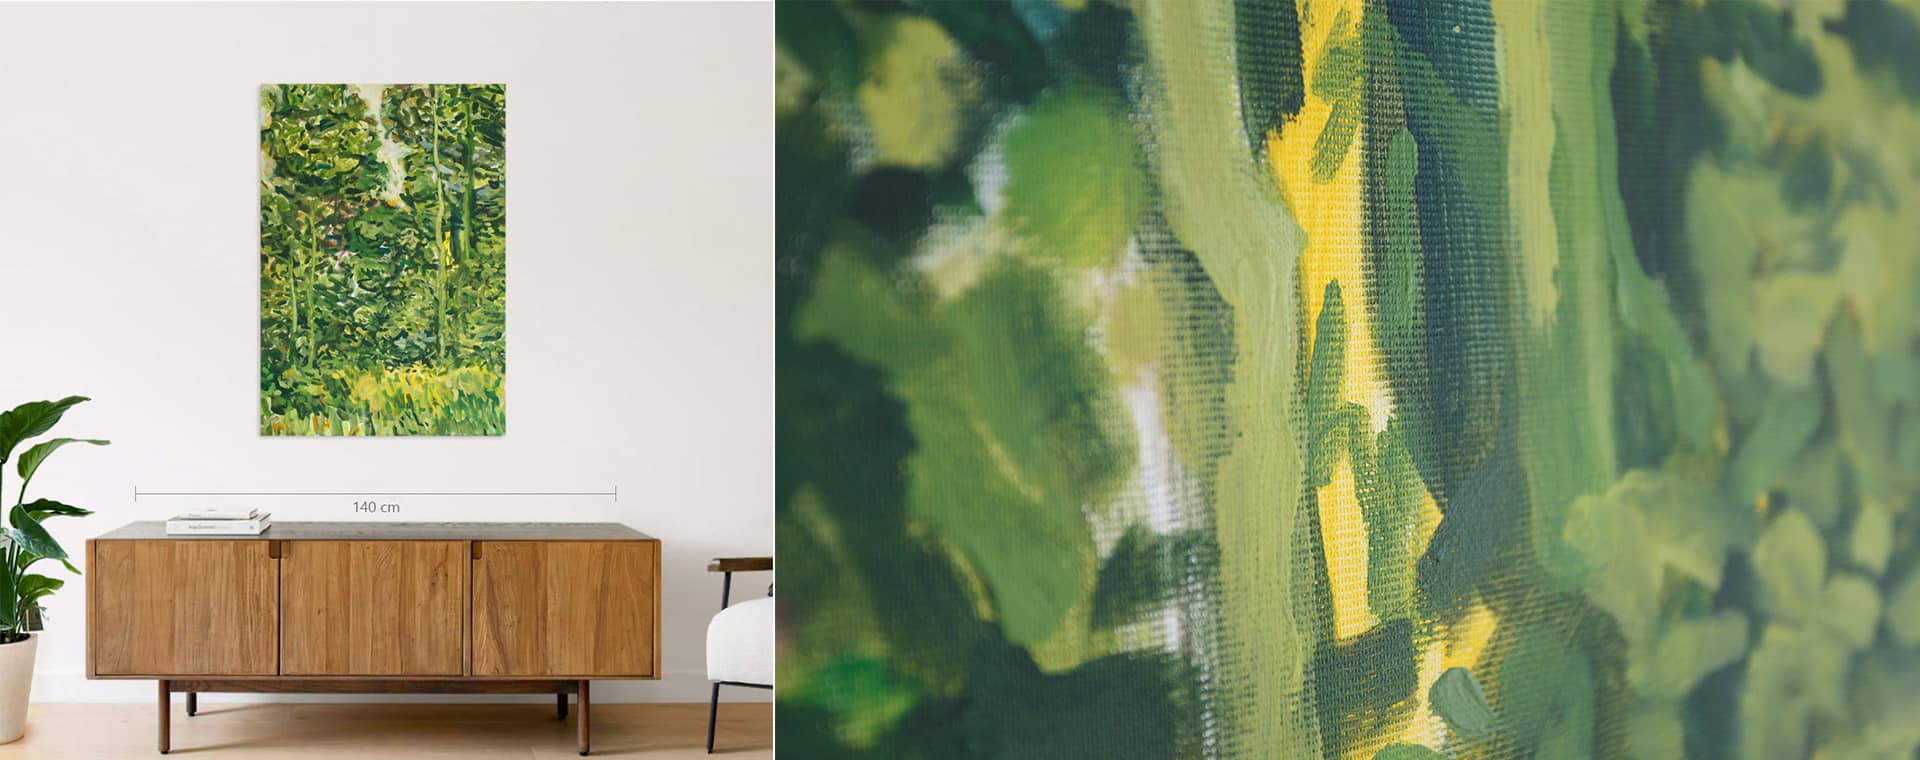 Impressionistische Waldmalerei über einer Kommode und Nahaufnahme der leuchtenden Acrylfarbe in Grün und Gelb auf Leinwand